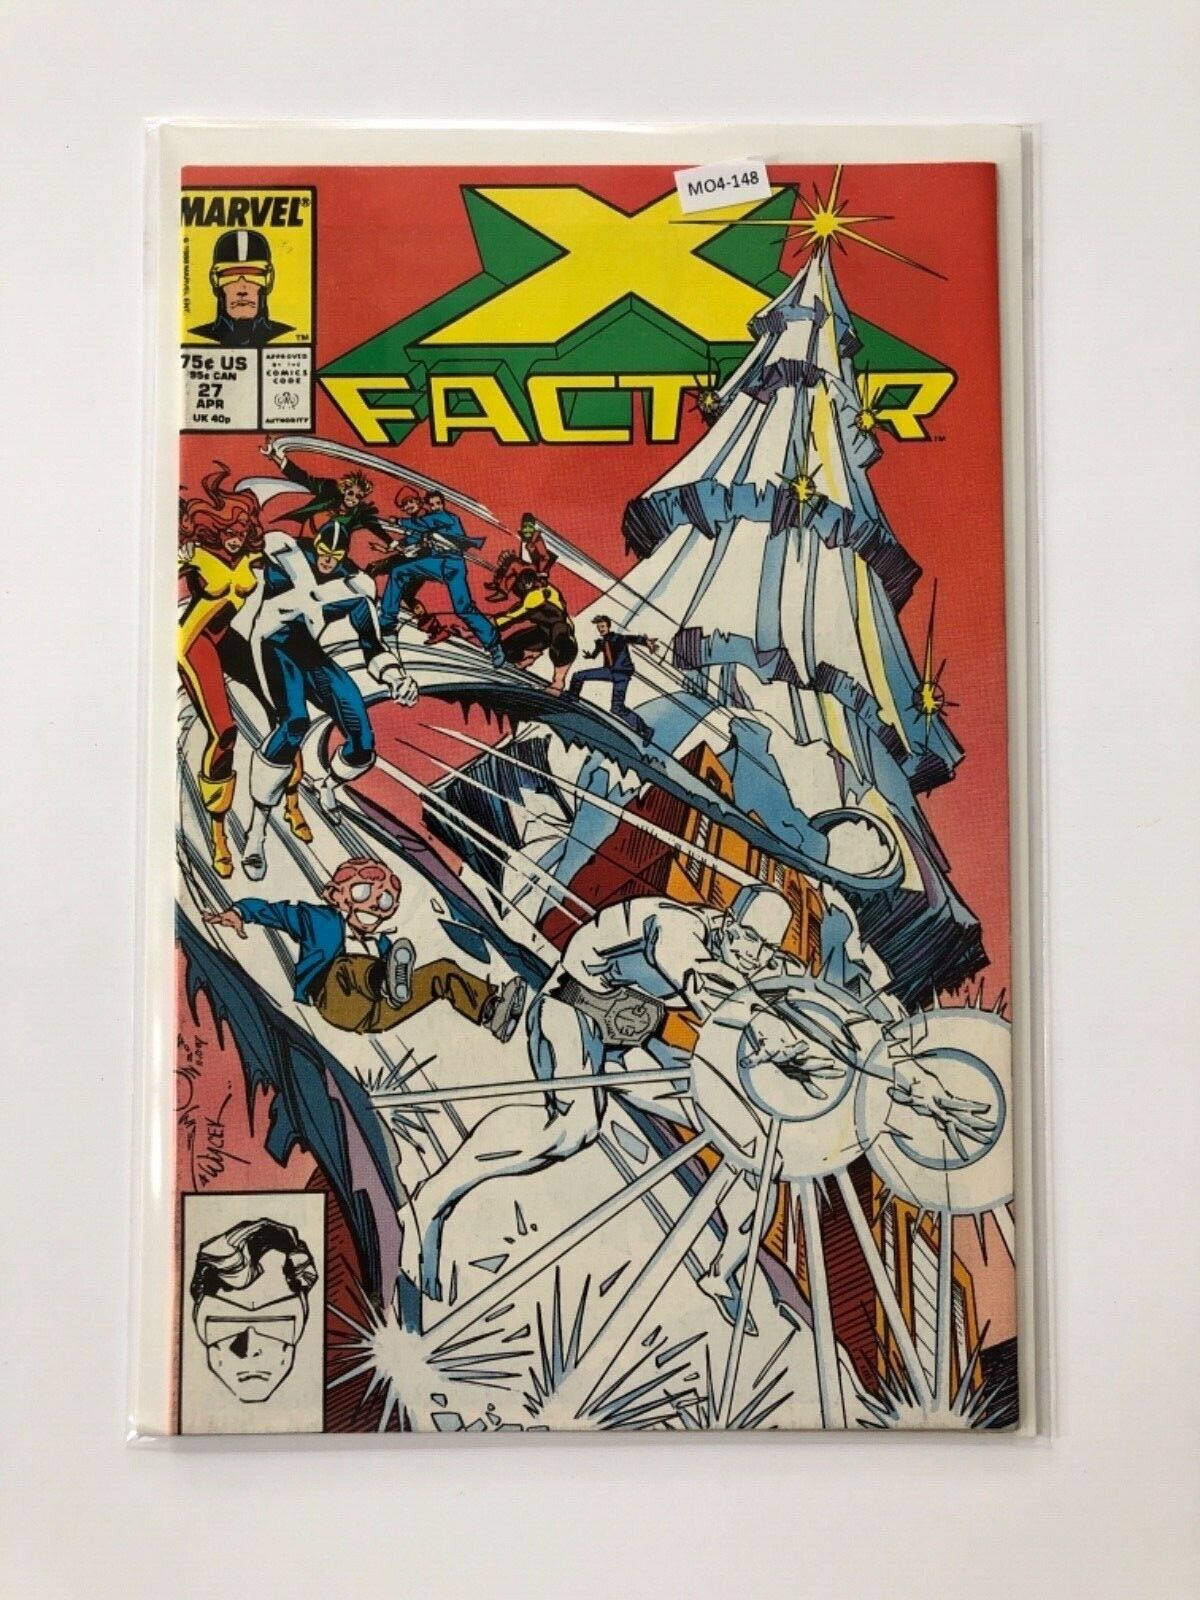 X-Factor vol.1 #27 1988 High Grade 8.0 Marvel Comic Book MO4-148